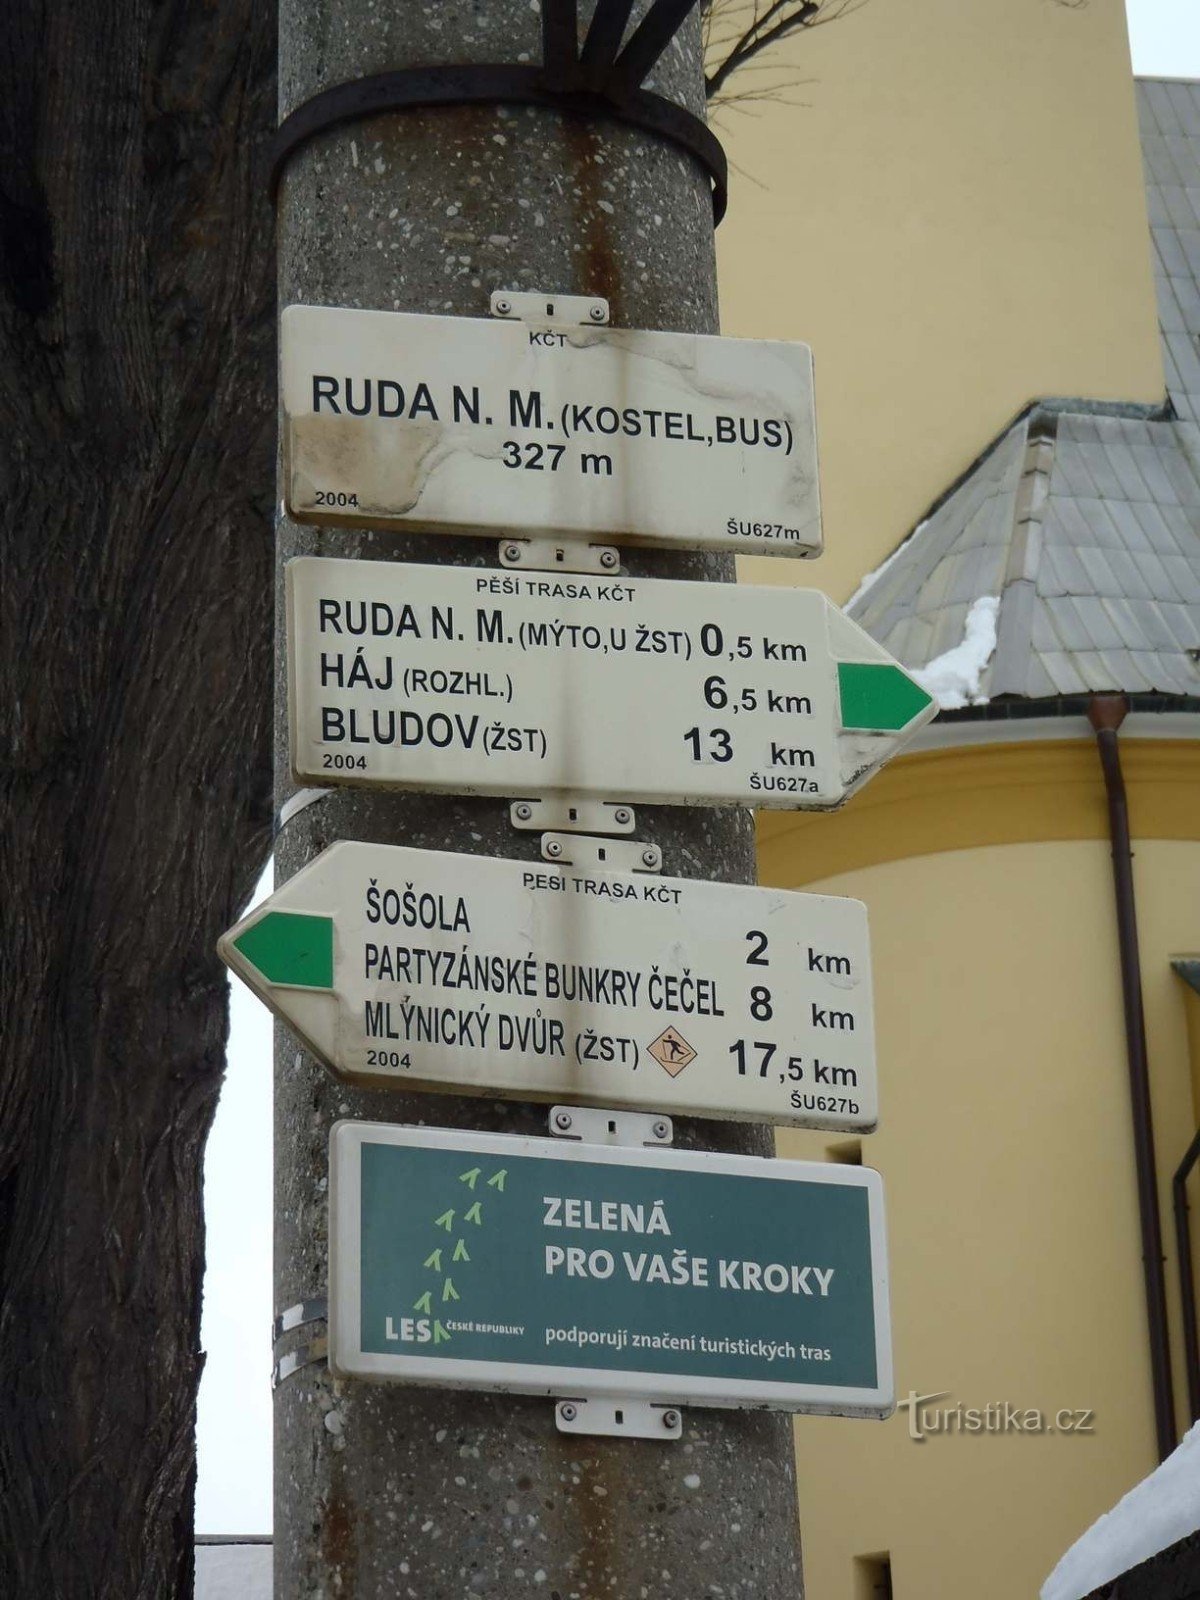 Biển chỉ dẫn nhà thờ Ruda nad Moravou - ngày 18.2.2012 tháng XNUMX năm XNUMX